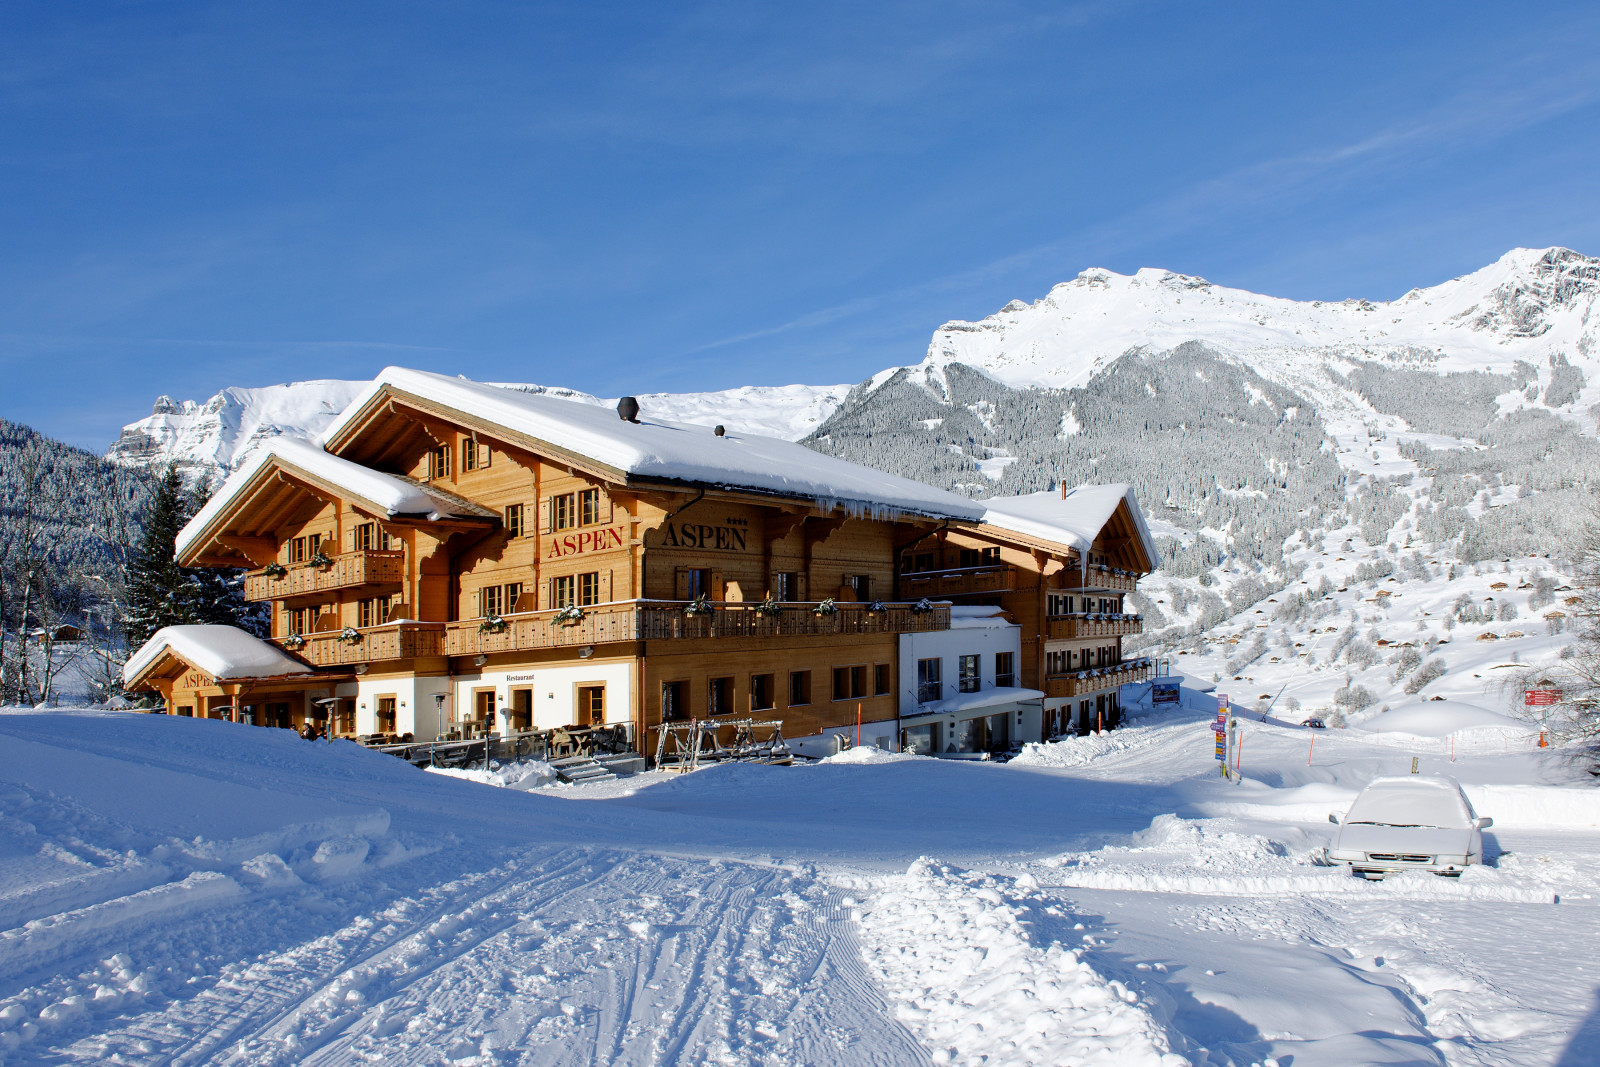 tuyết, rừng, nhà ở, Thụy sĩ, mùa đông, núi, khách sạn, phương sách